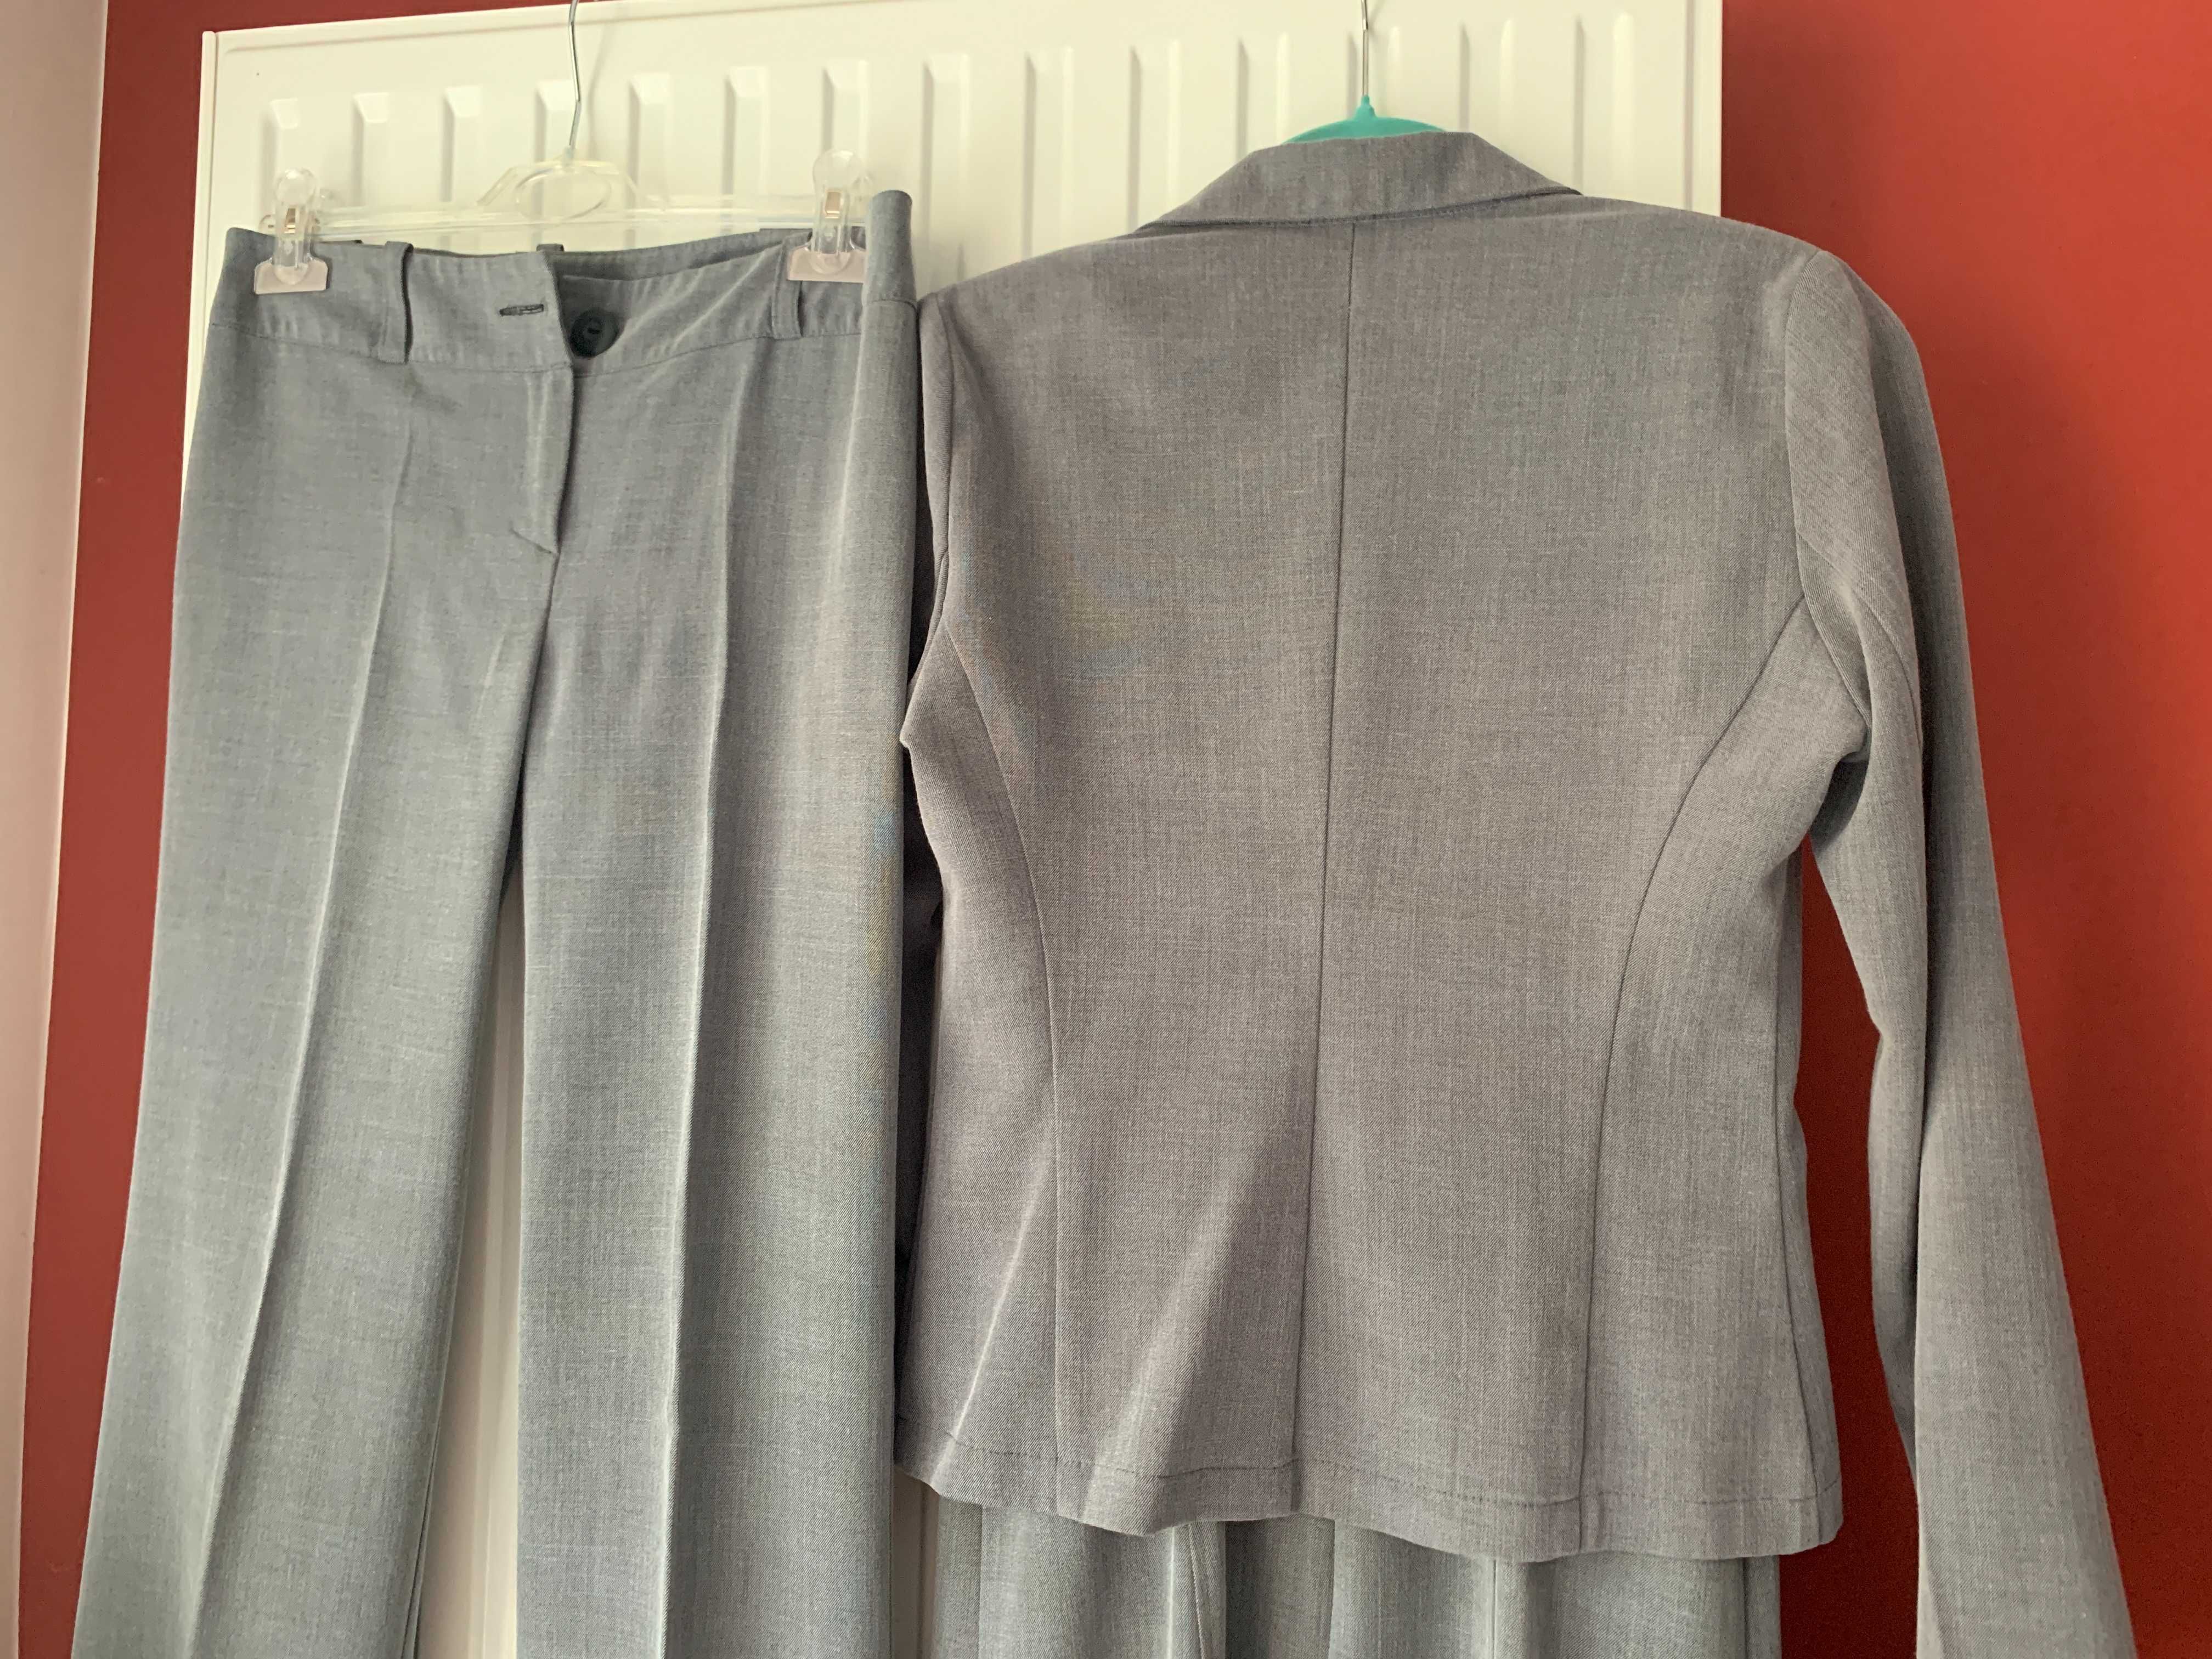 Elegancki garnitur damski: garsonka, spodnie i sukienka szare rozm. 38